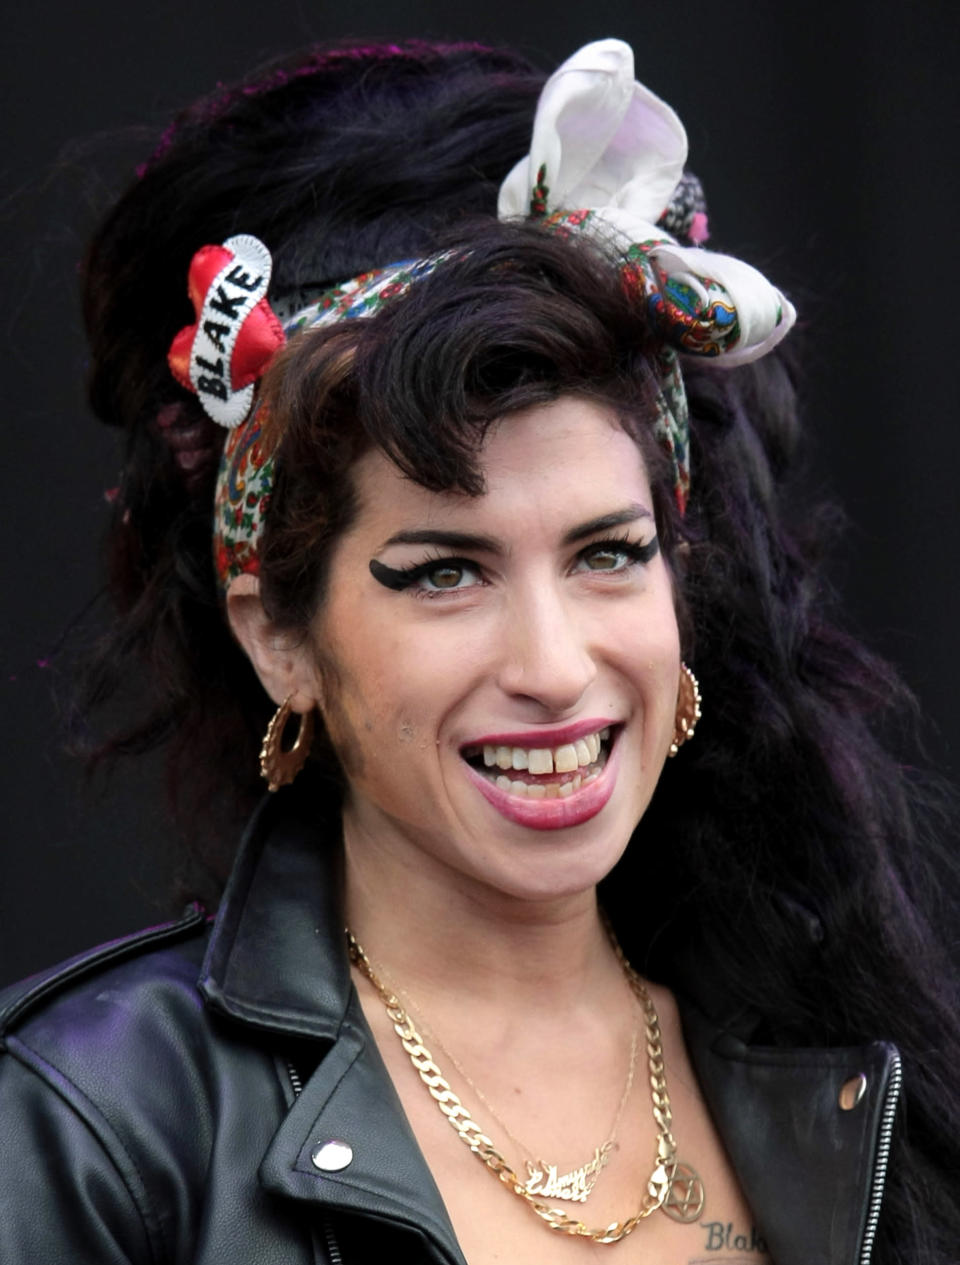 En seulement 2 albums, Amy Winehouse est devenue une véritable icône de la musique. Au total, elle aura vendu près de 15 millions d'albums à travers le monde. L'album "Back to Black" s'est vendu à 11 millions d'exemplaires. AFP